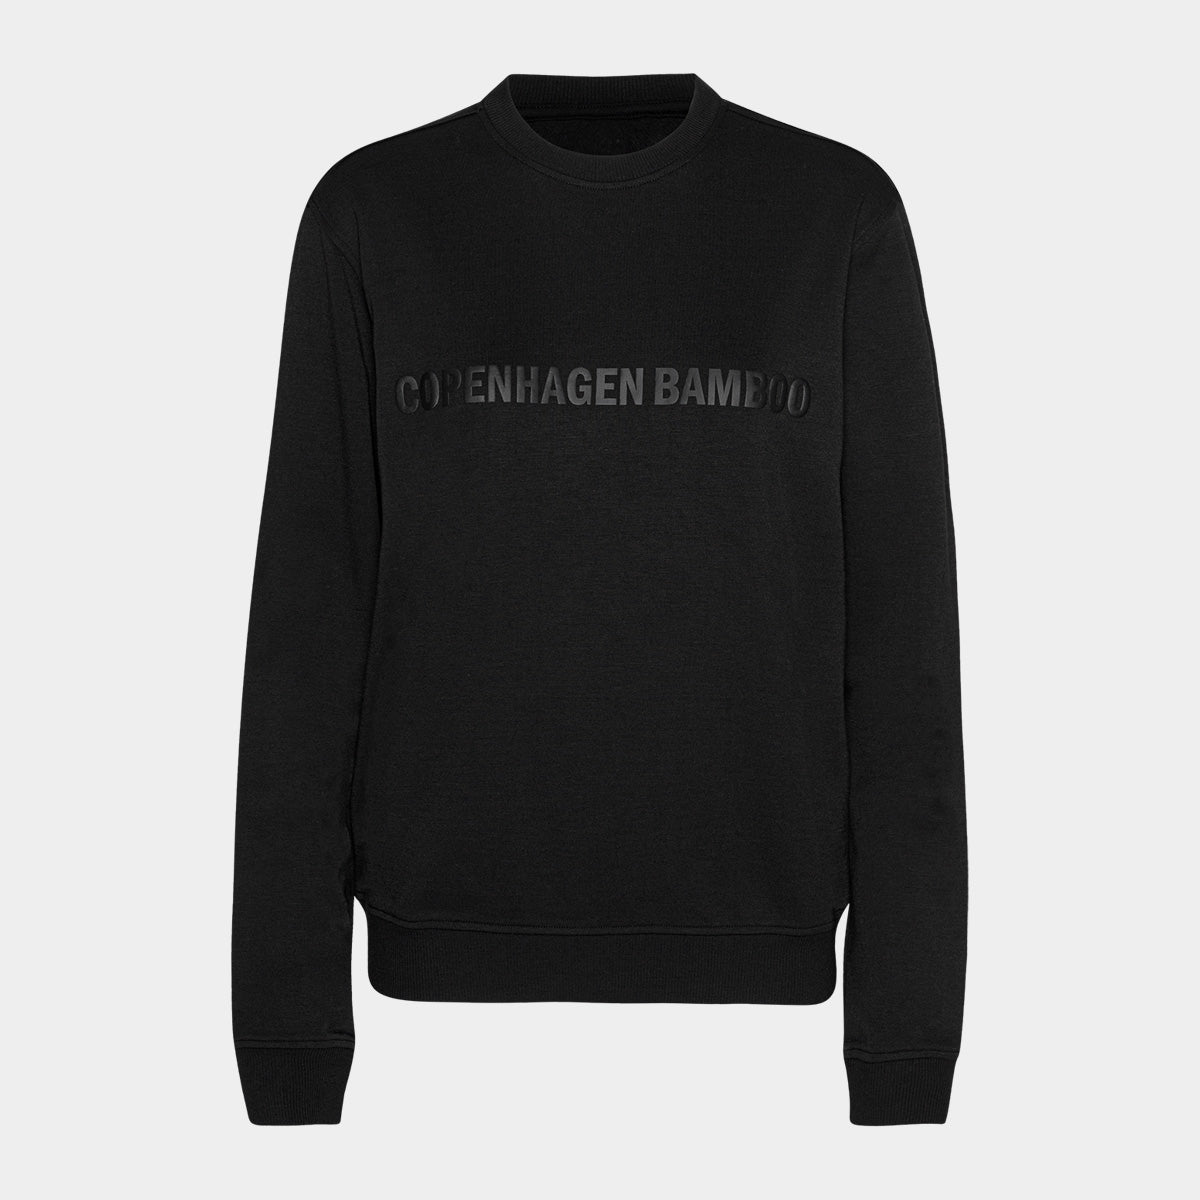 Se Sort bambus sweatshirt til dame med logo fra Copenhagen Bamboo, S hos Bambustøj.dk